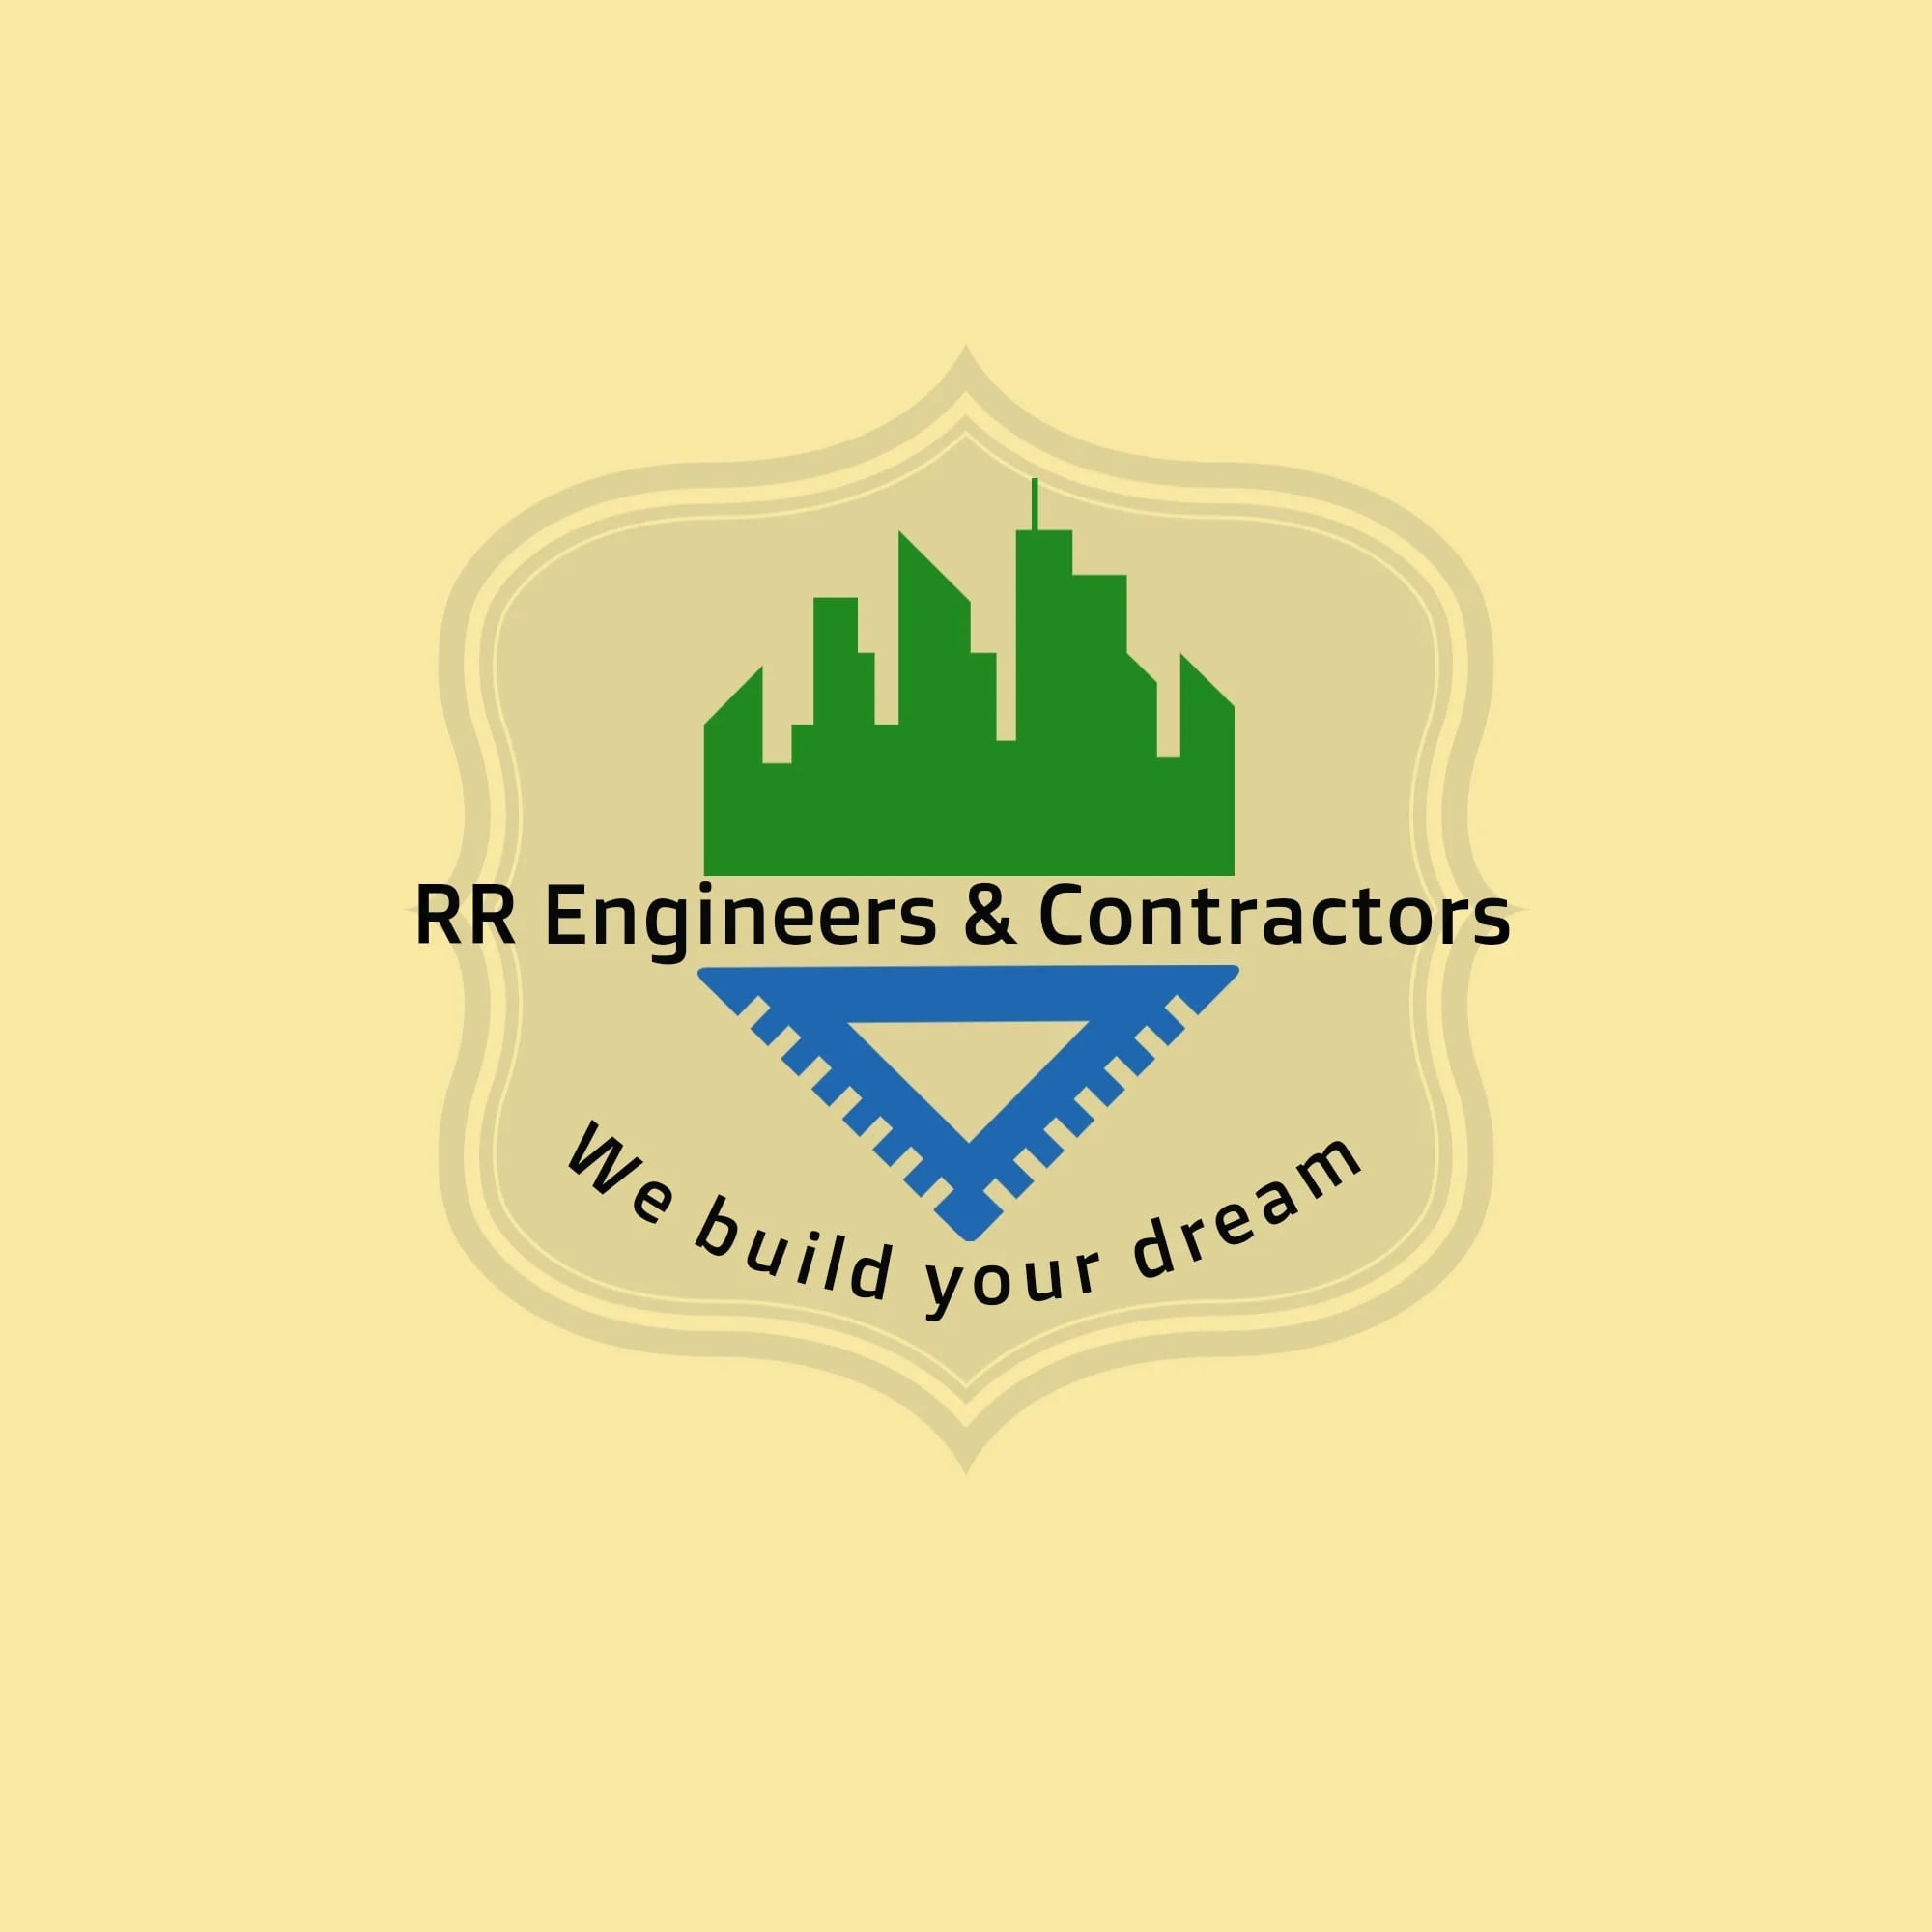 RR Engineers & Contractors